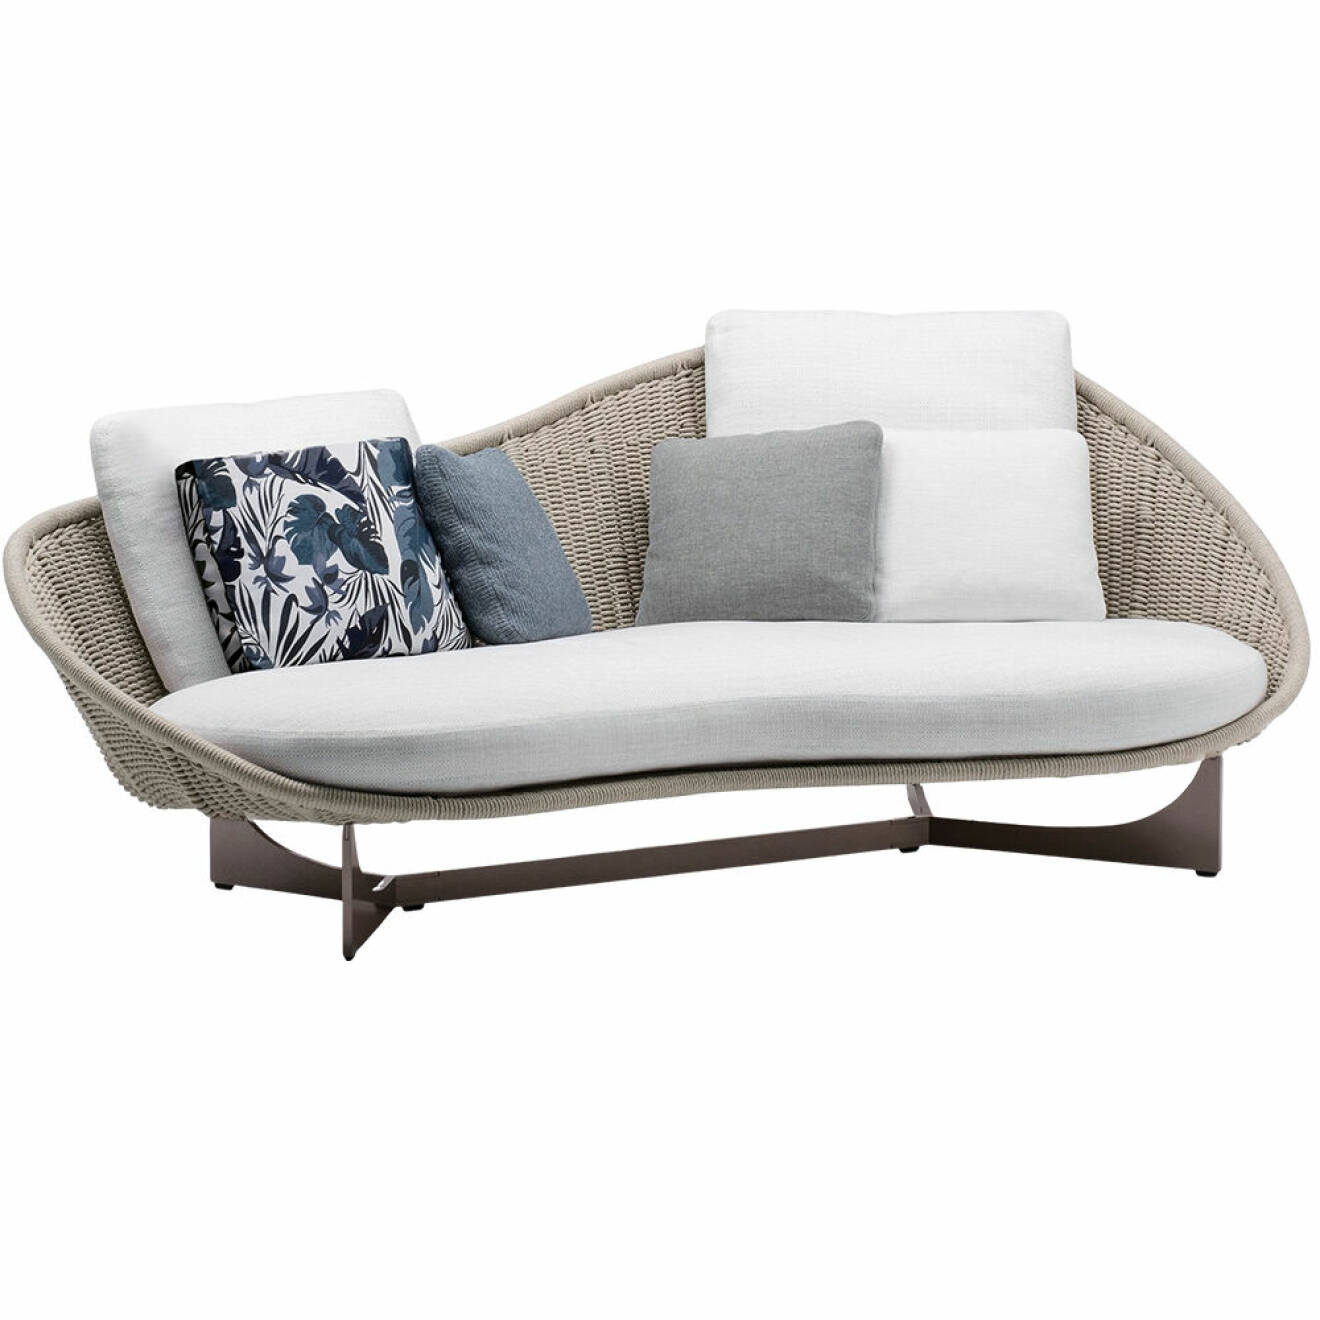 Dansk-italienska Gamfratesis organiskt formade soffa Lido, för Minotti